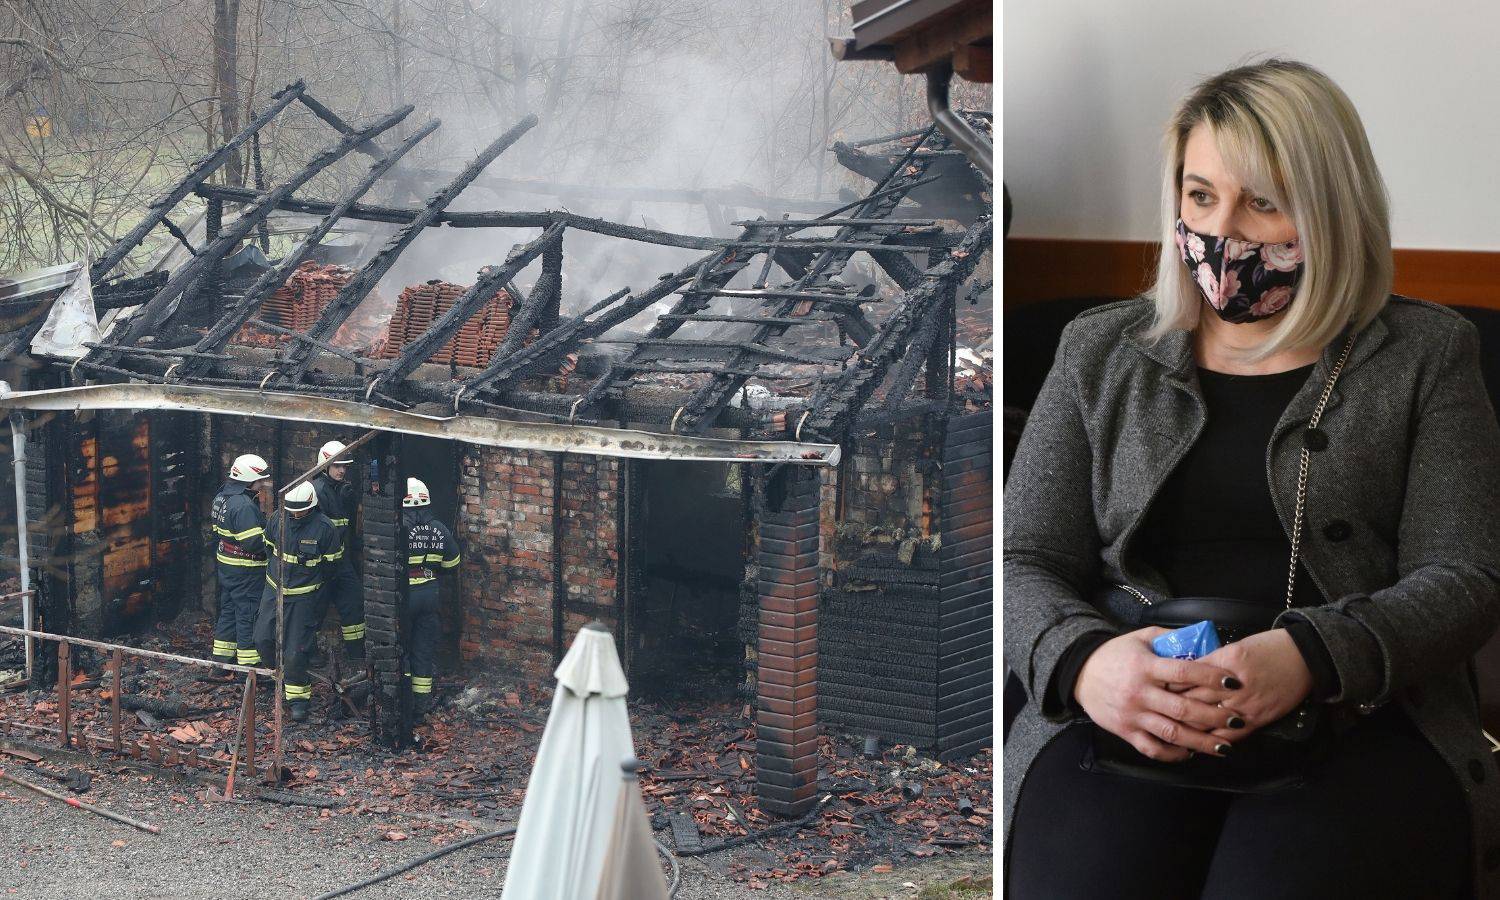 Suđenje vlasnici doma u kojem je u požaru izgorjelo 6 štićenika, kaže da se ne osjeća krivom